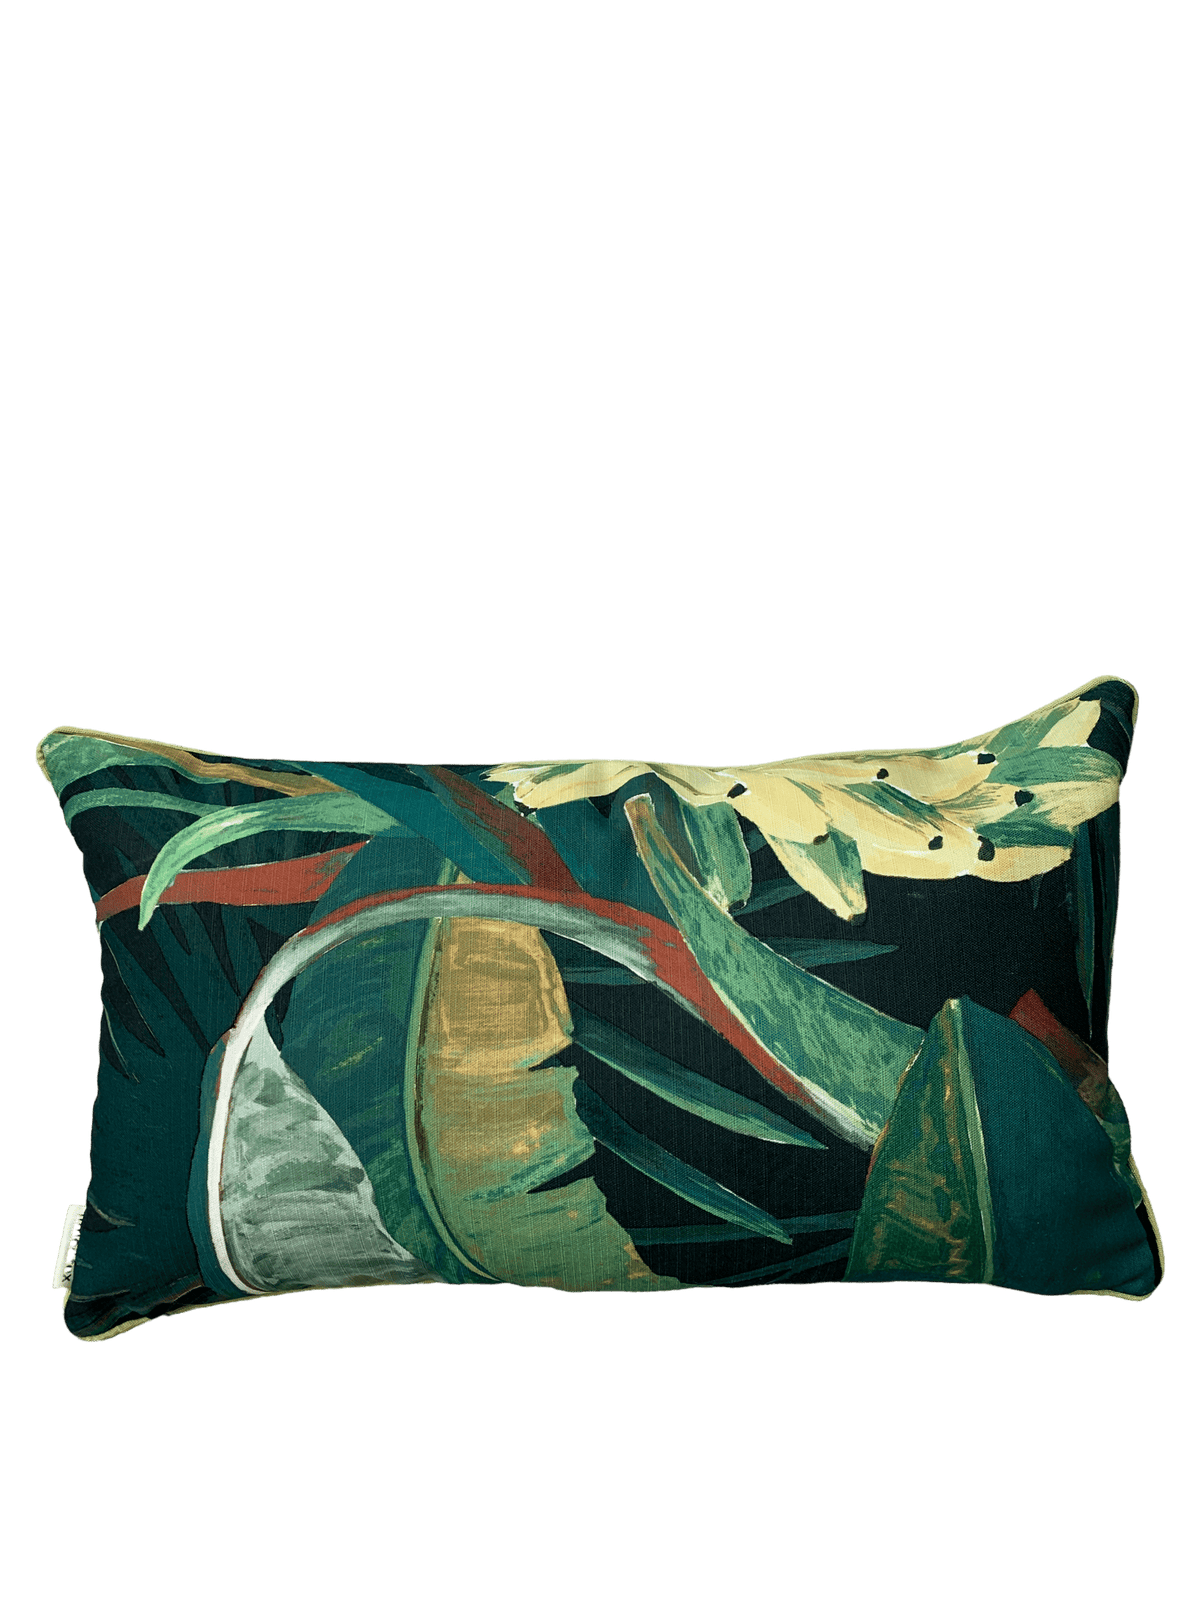 A tropical printed cushion.